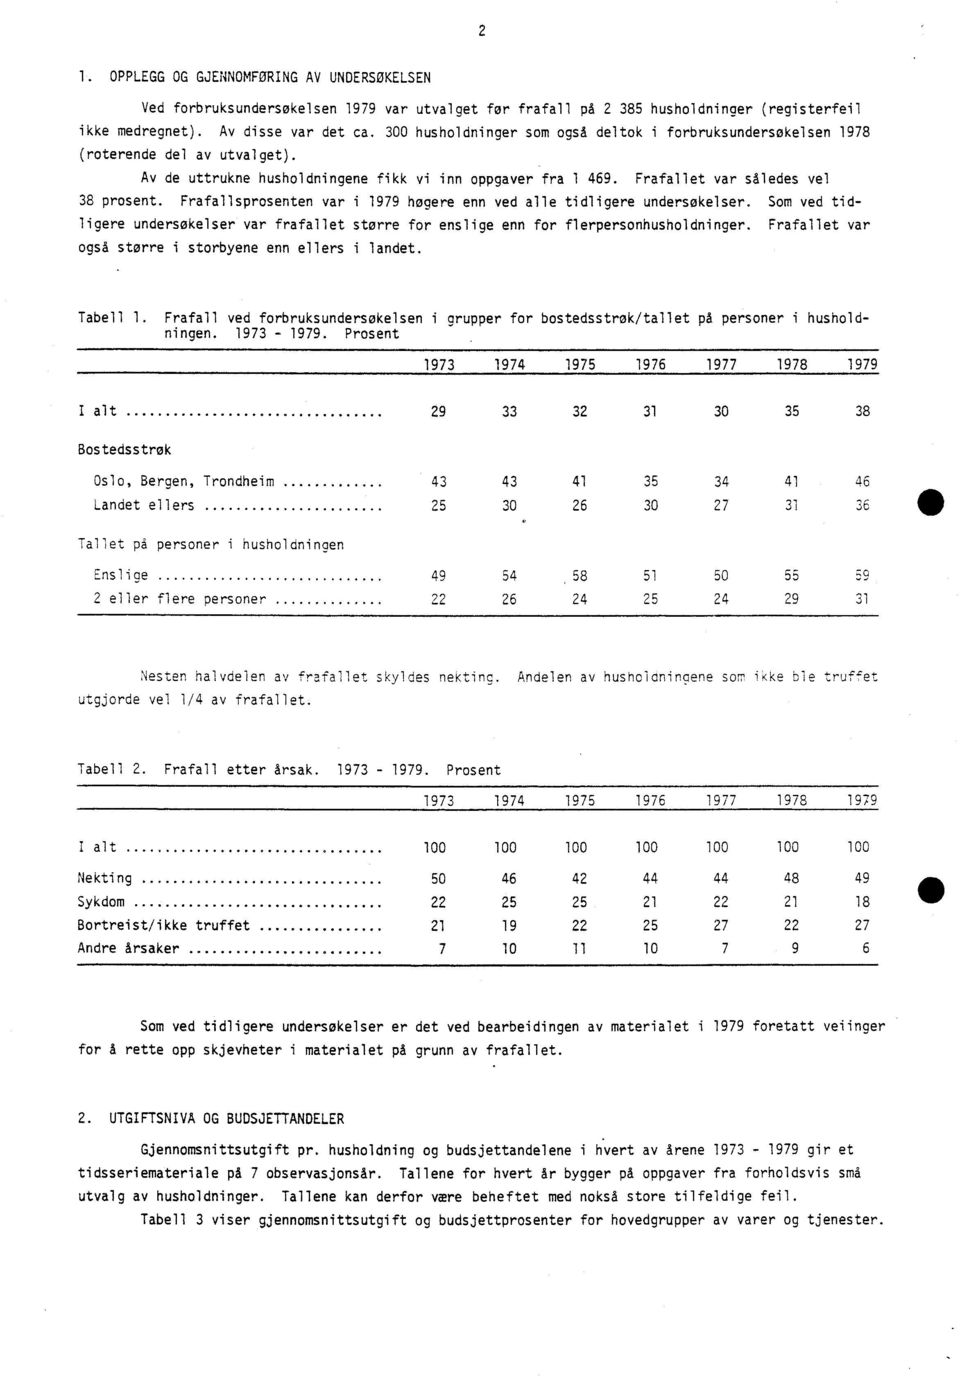 Frafallsprosenten var i 1979 høgere enn ved alle tidligere undersøkelser. Som ved tidligere undersøkelser var frafallet større for enslige enn for flerpersonhusholdninger.